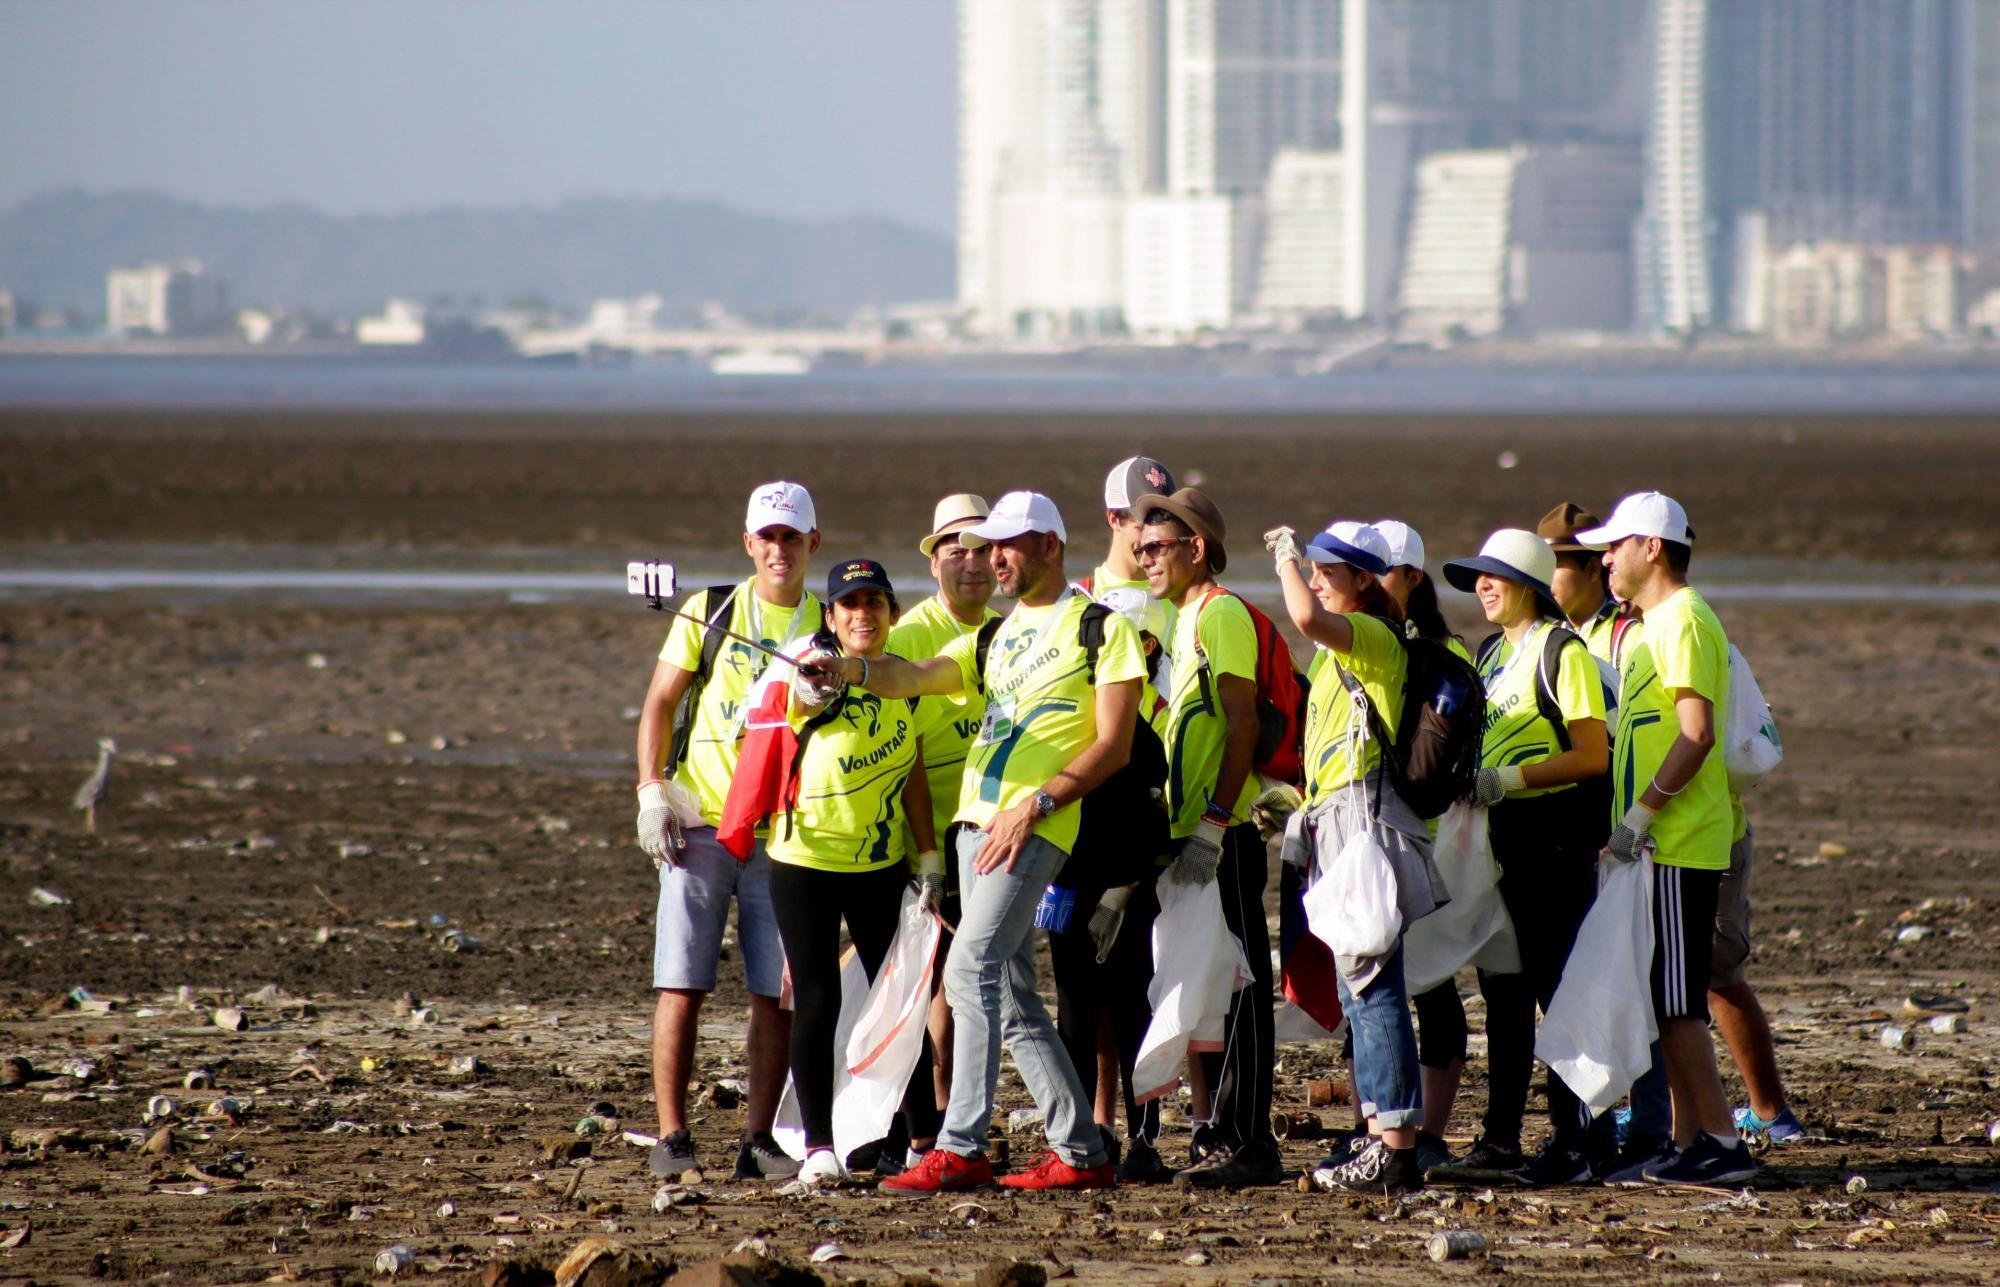 CIUDAD DE PANAMÁ (PANAMÁ), 18/1/2019.- Voluntarios se toman fotos mientras recogen basura en una playa este viernes, en Ciudad de Panamá (Panamá). Unos 2.000 voluntarios de la Jornada Mundial de la Juventud Panamá 2019 (JMJ) se reunieron en el malecón de Costa del Este, en la capital panameña, a recolectar basura que se acumula en la playa.EFE/Carlos Lemos